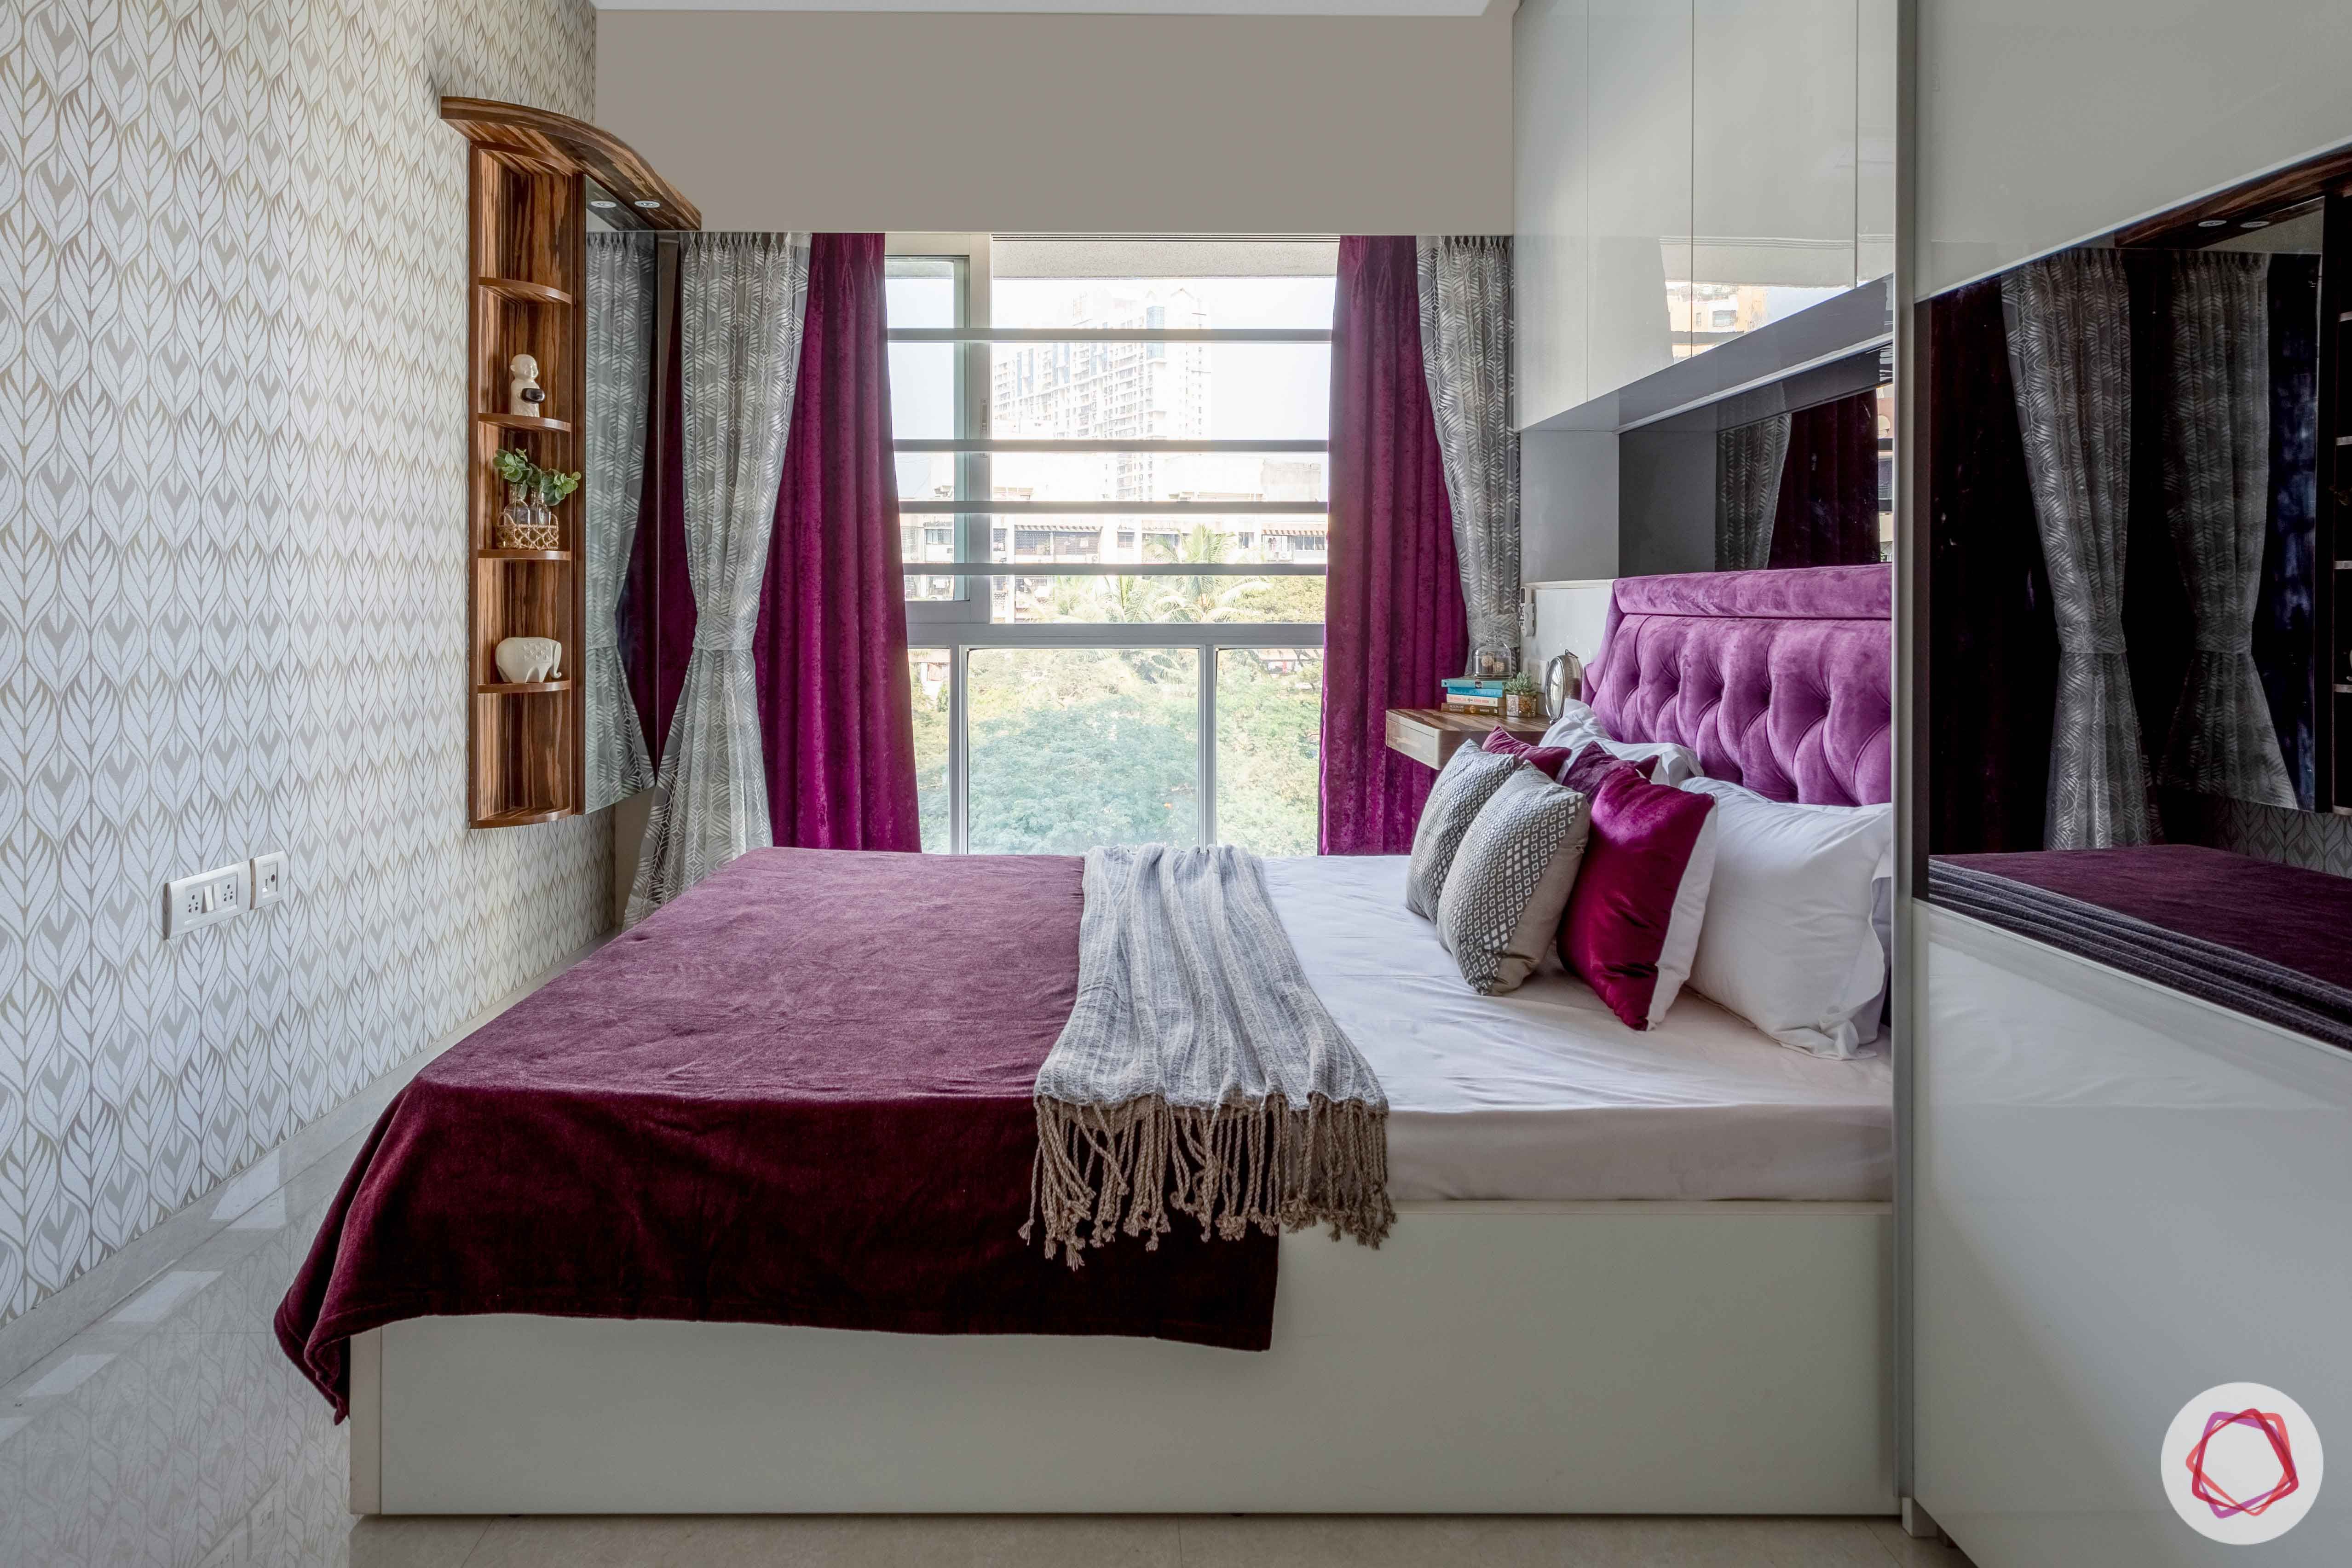 2 bhk flat interior-master bedroom-window-white bed-wall niche storage